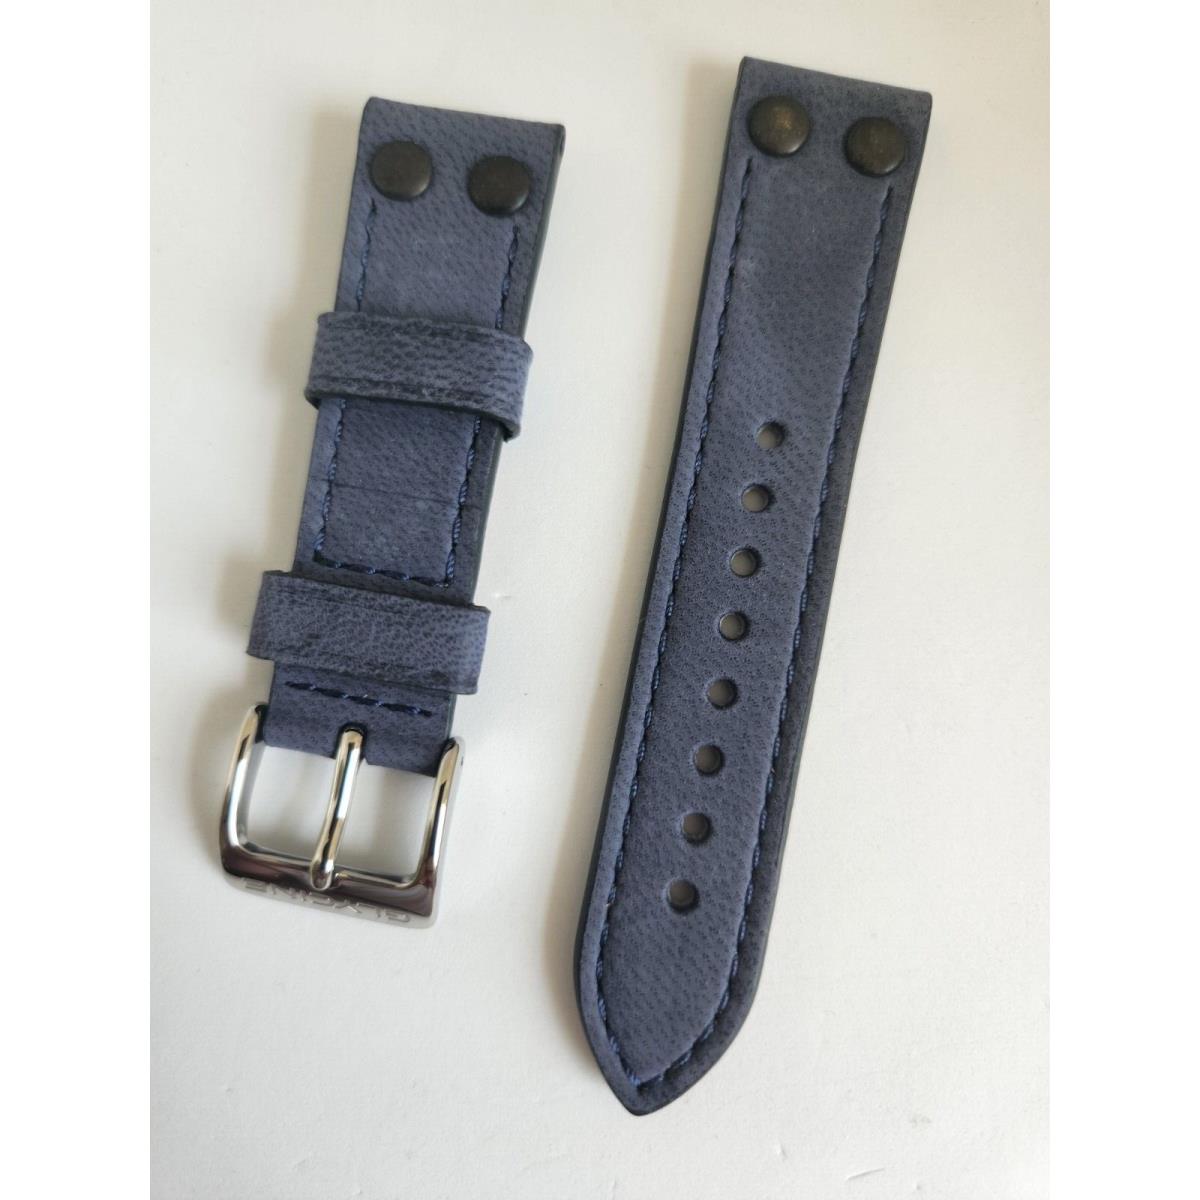 Oem Glycine F104 20mm Blue Leather Strap Band Bracelet For Model GL0130 Etc